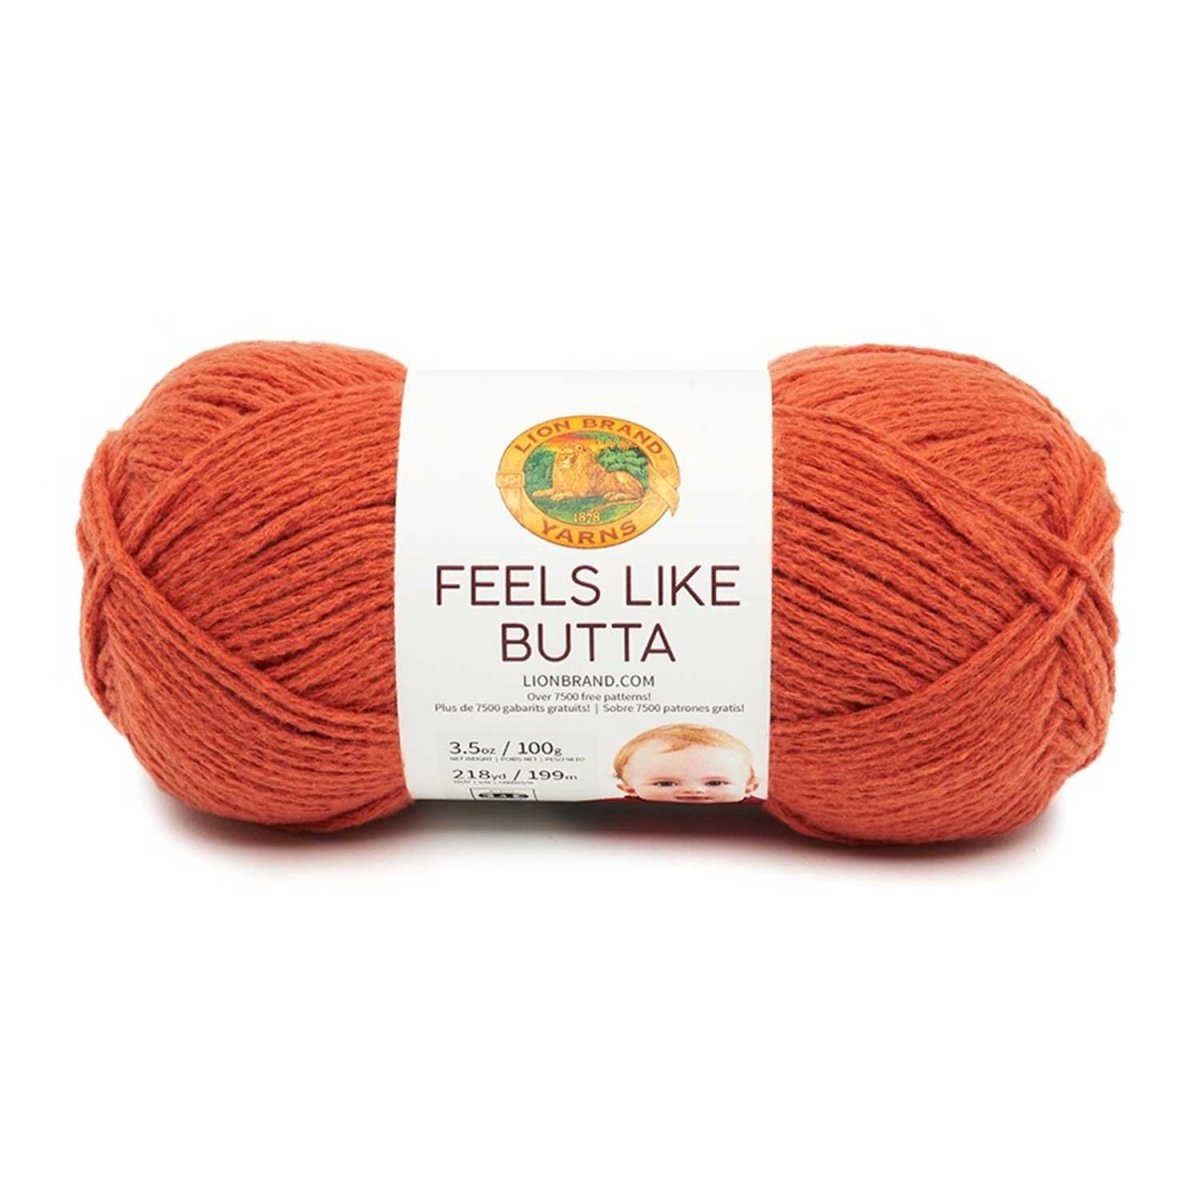 FEELS LIKE BUTTA - Crochetstores215-133